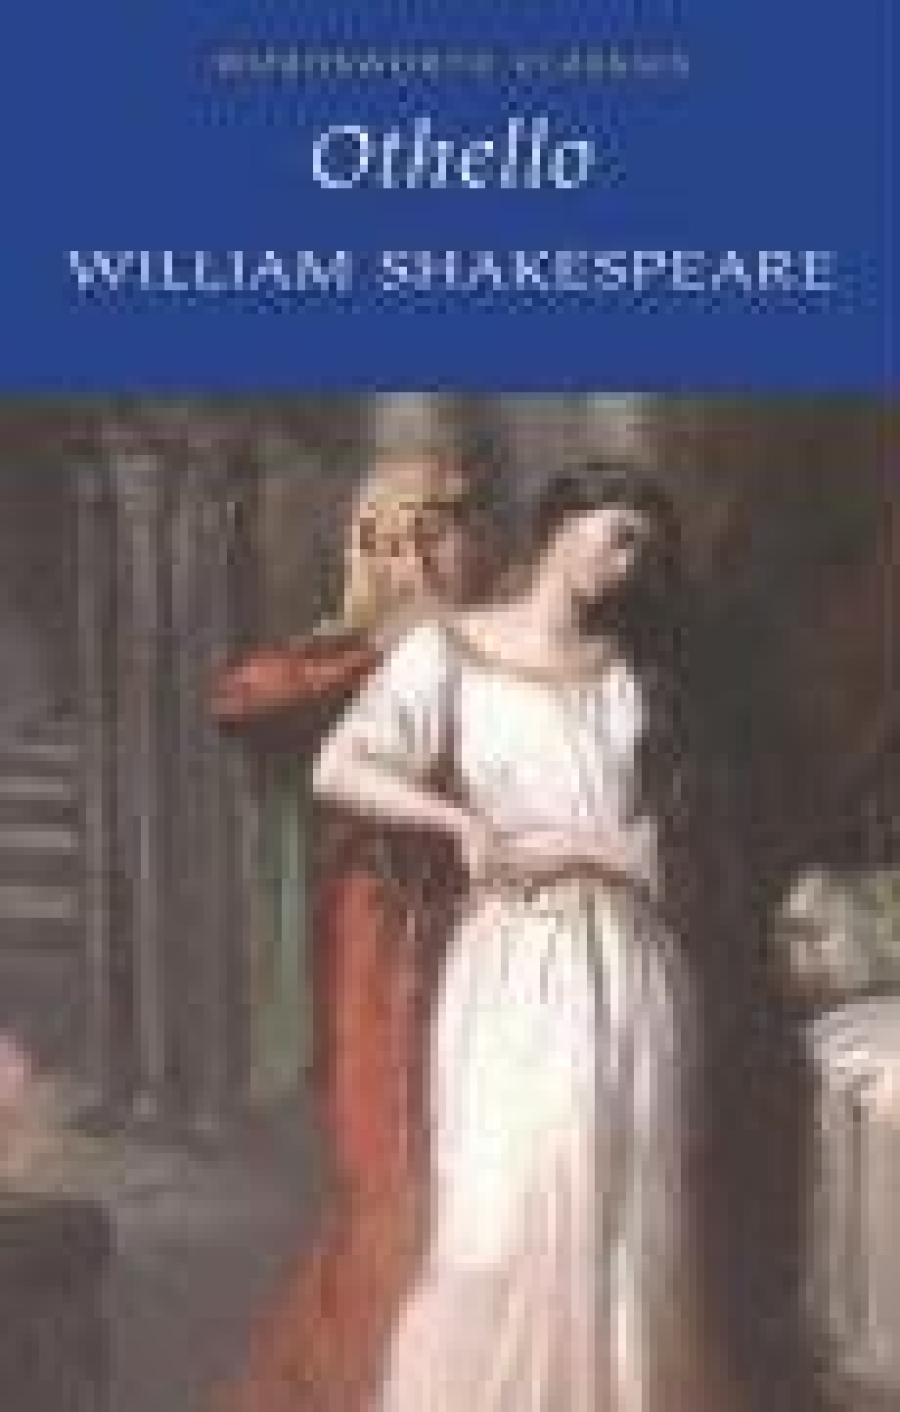 William Shakespeare Othello 